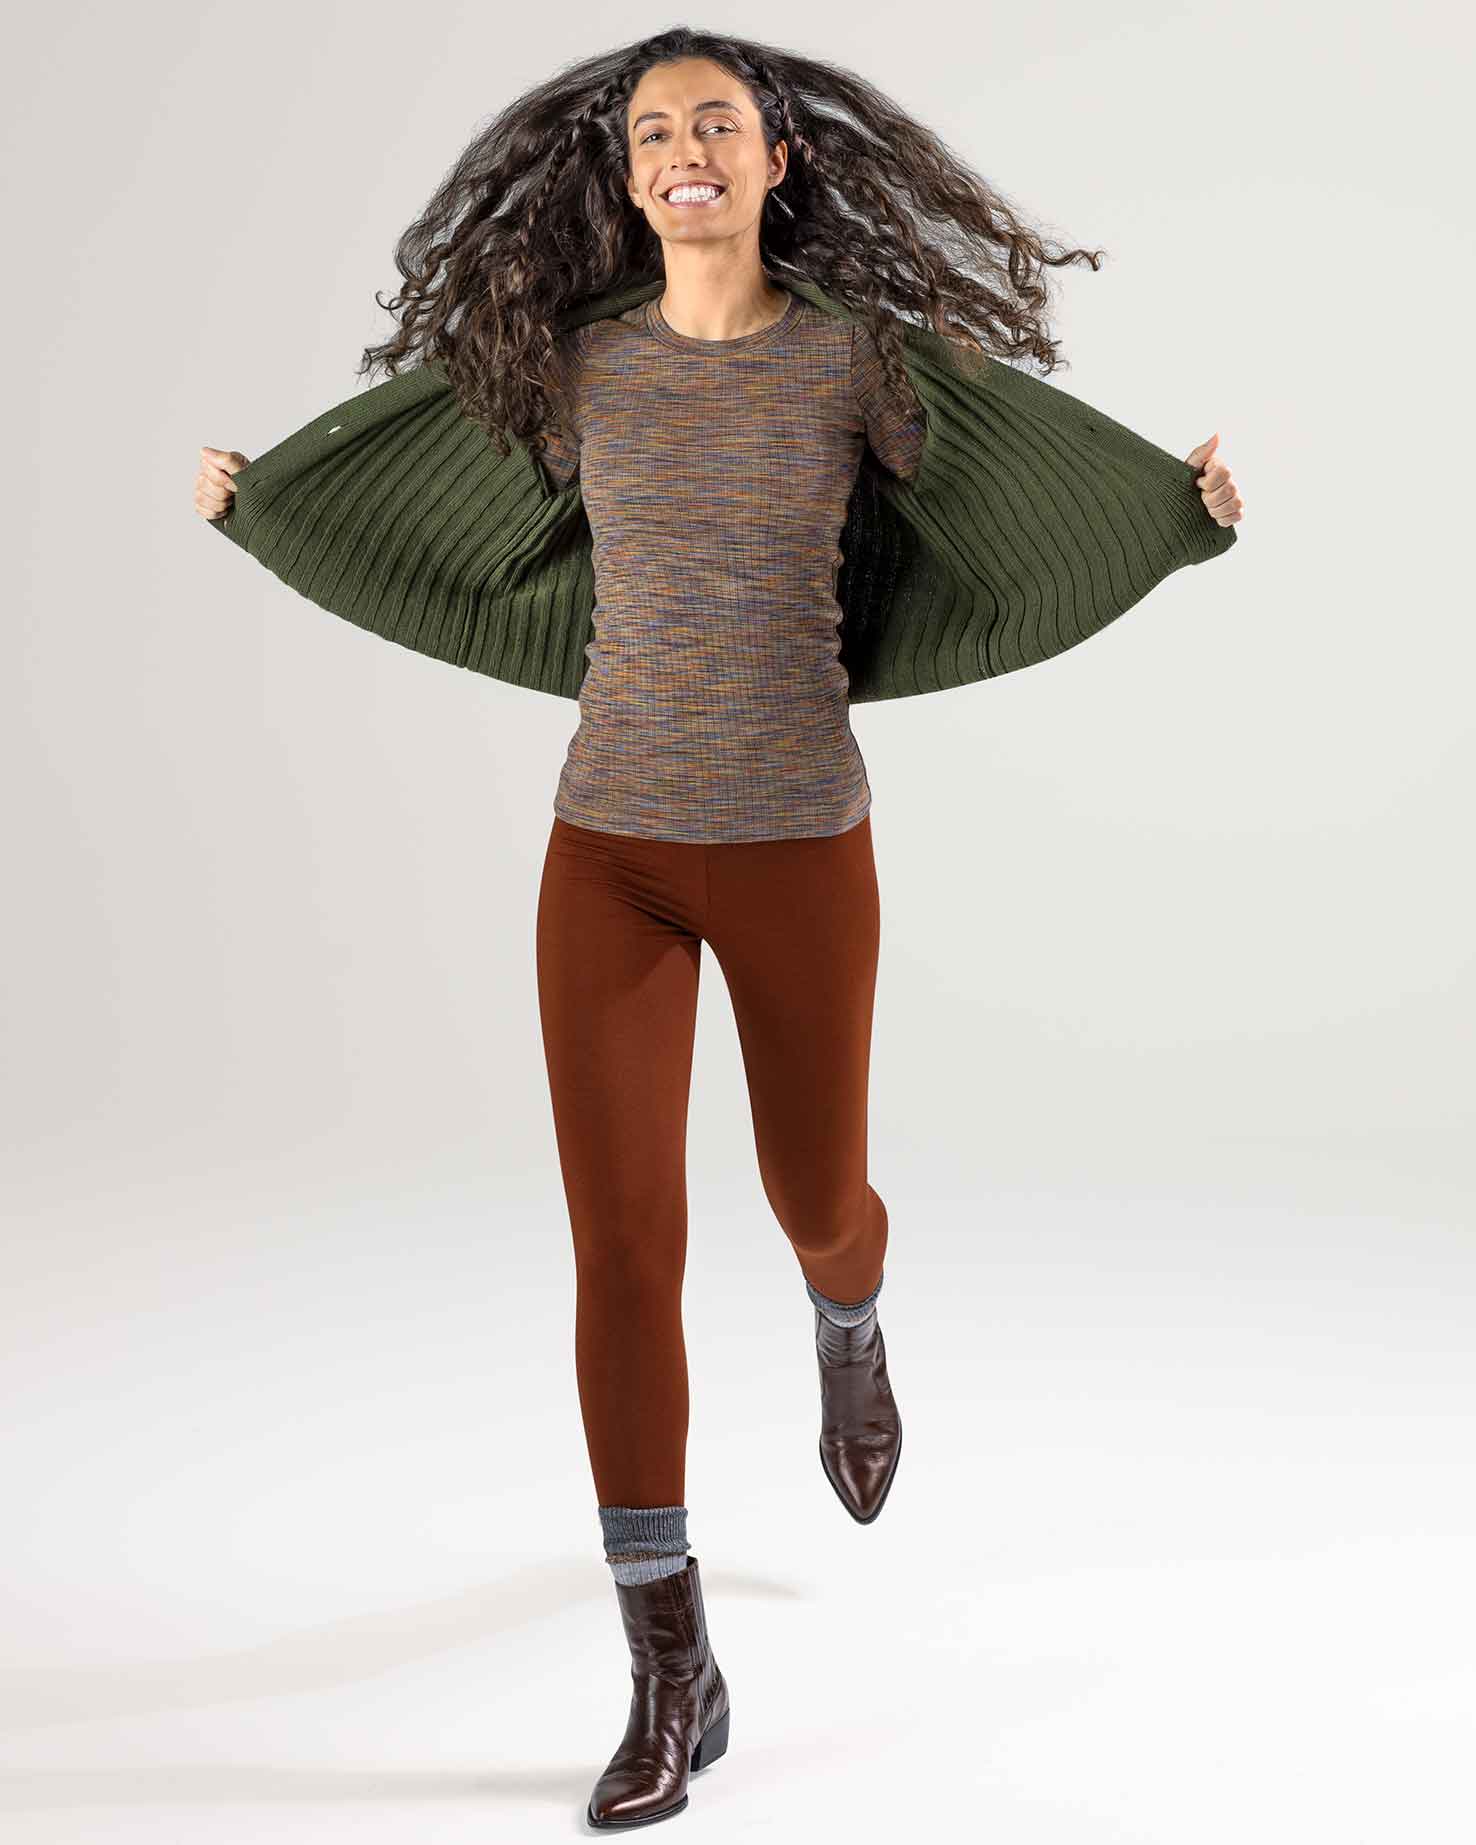 Mahogny Annedore leggings - økologisk bomull » Etiske og økologiske klær » Grønt Skift